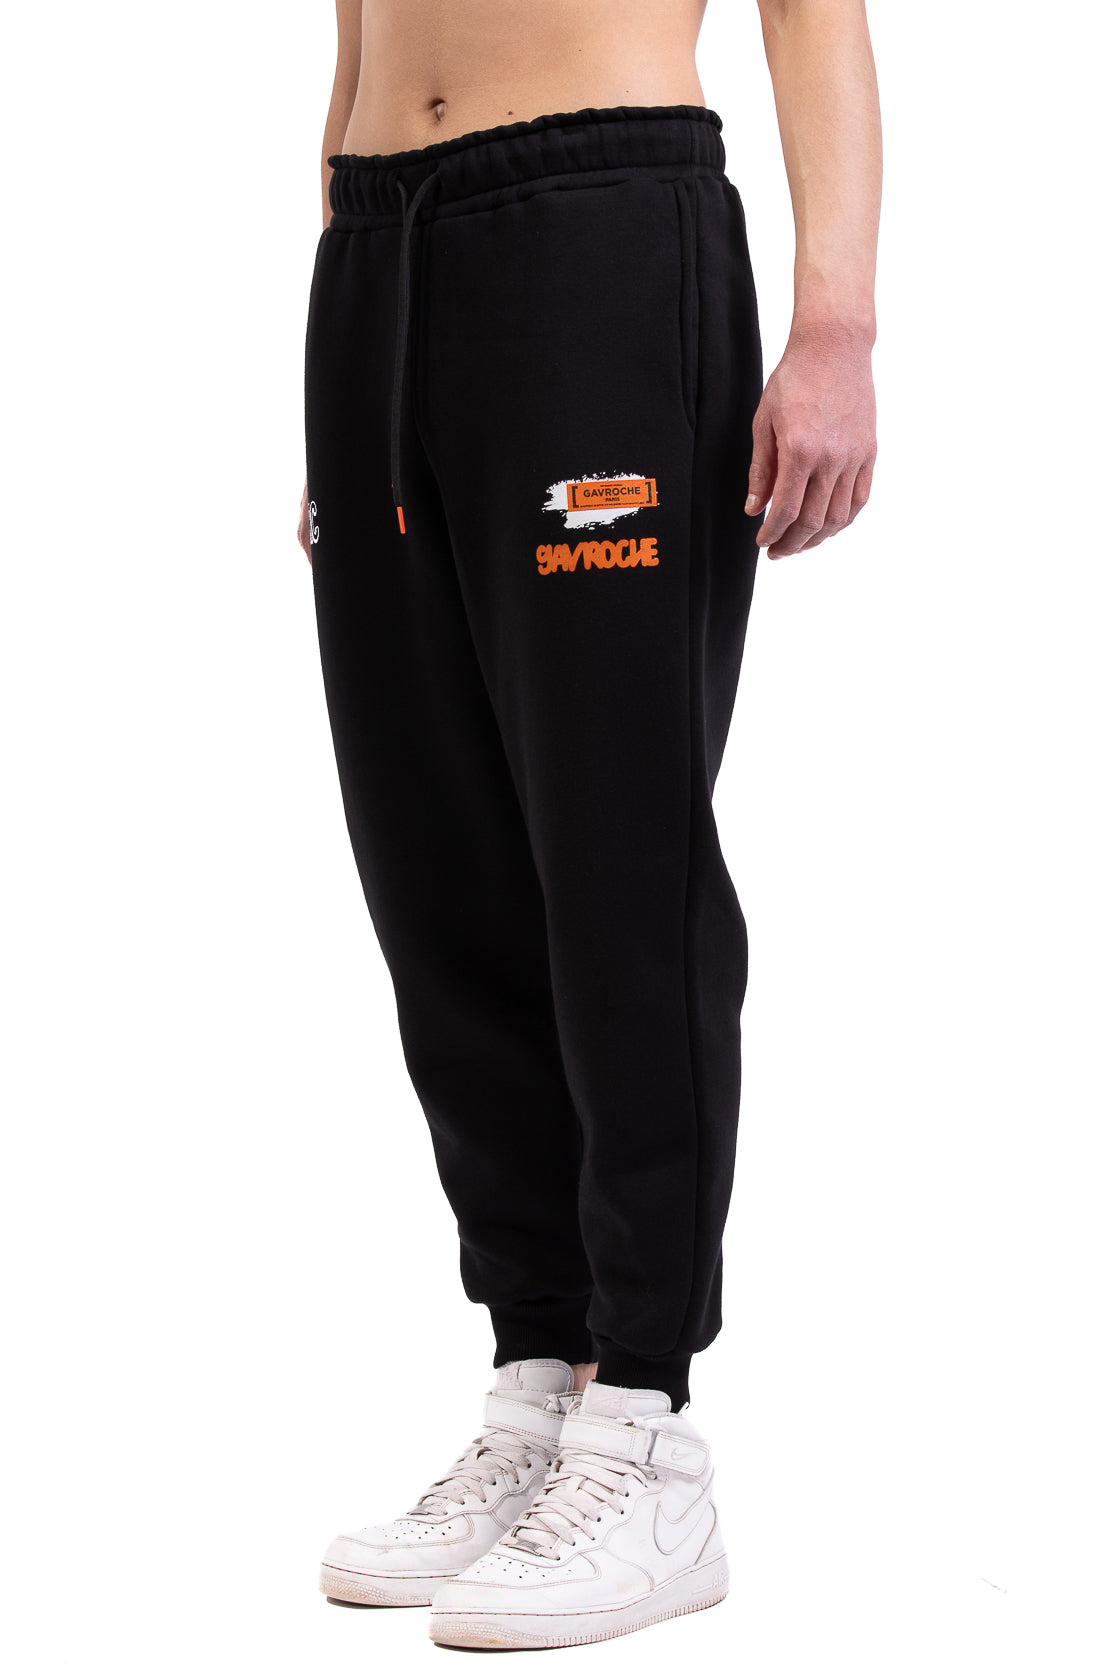 Pantalone da tuta Gavroche Paris U718 nero con pratiche tasche laterali estremità delle gambe elasticizzate